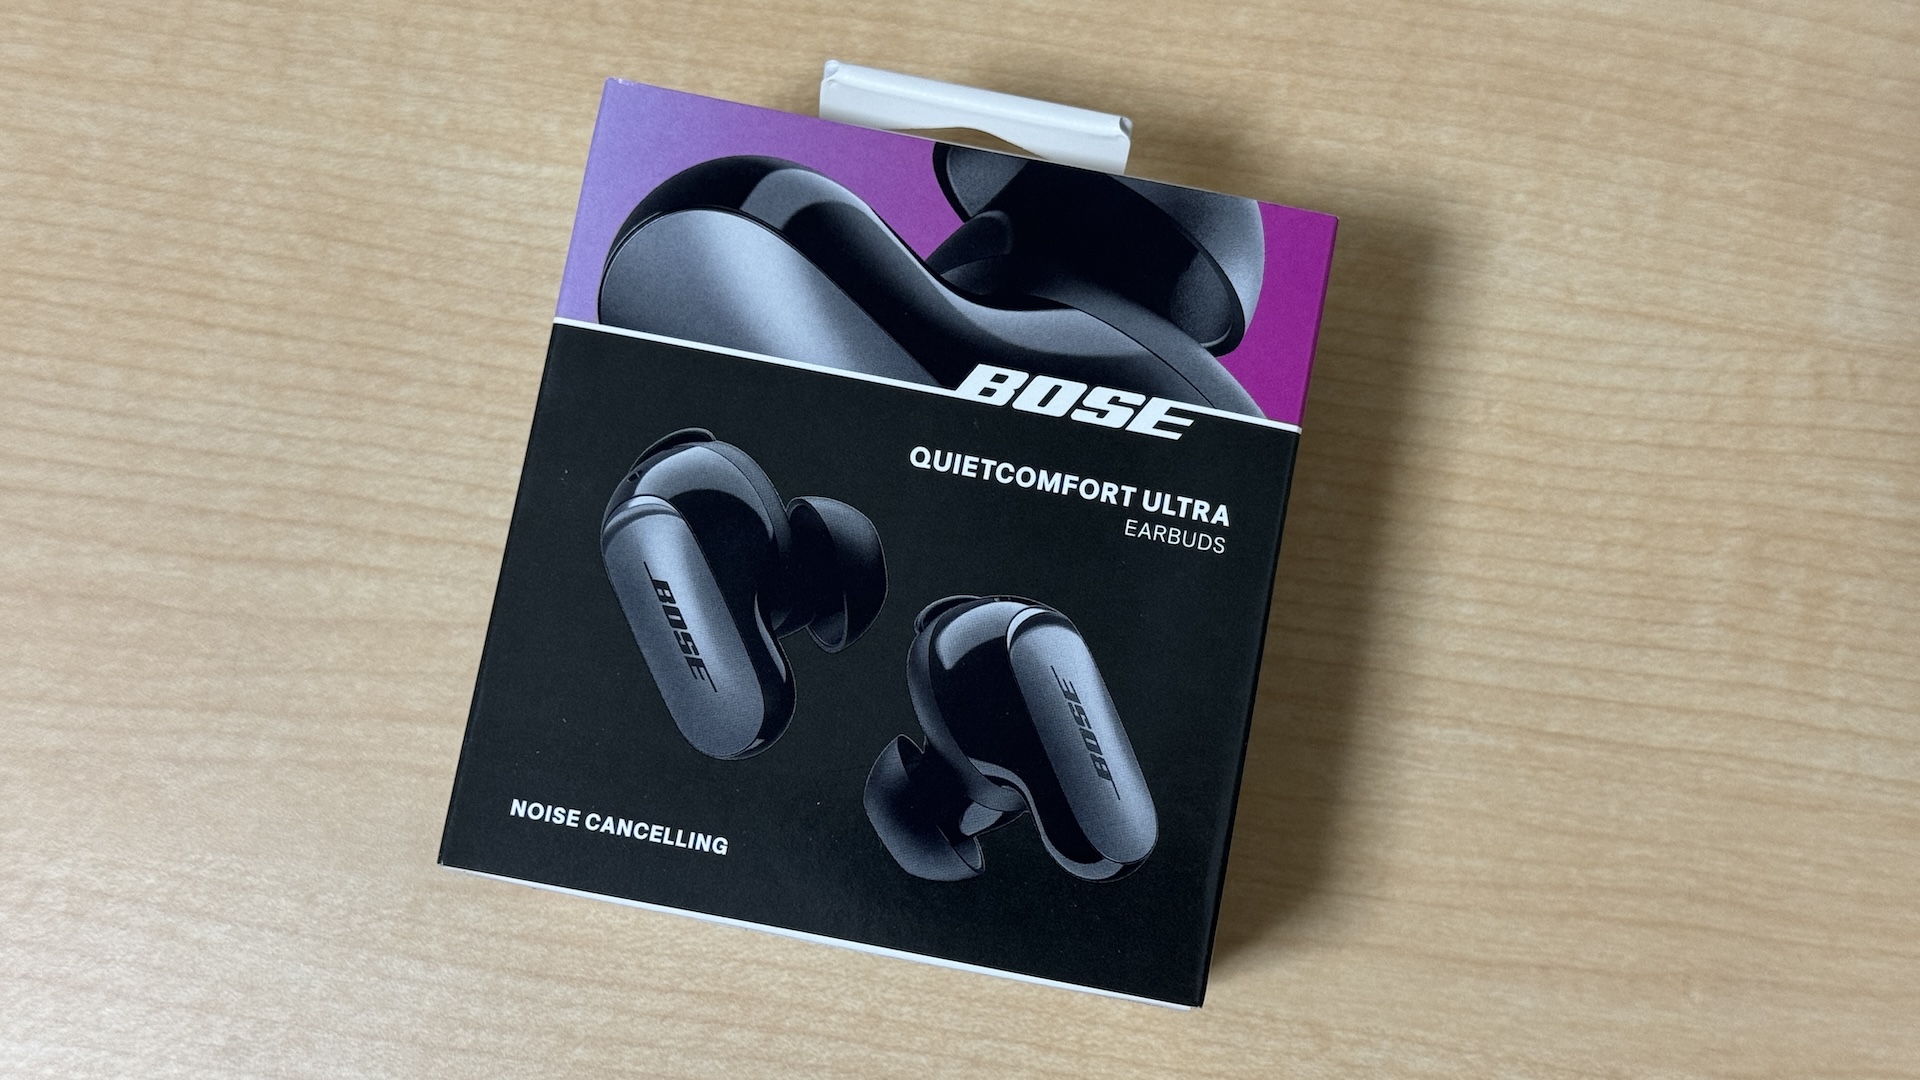 Bose QuietComfort Ultra Earbudsのパッケージ